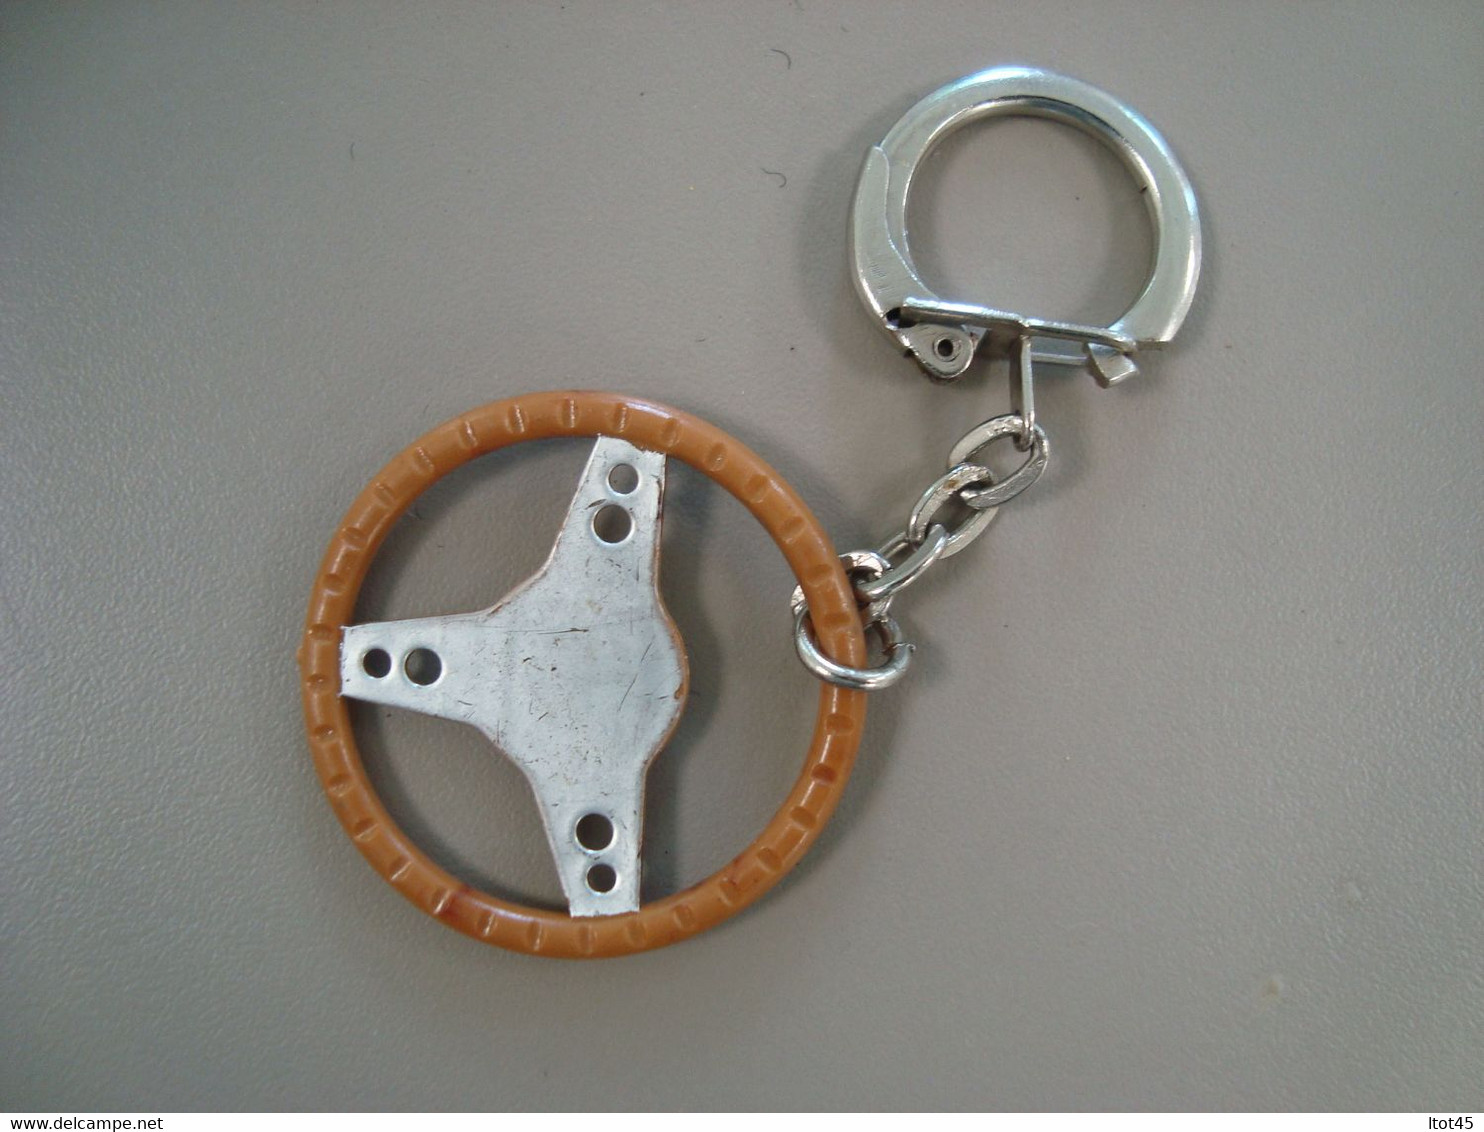 PORTE-CLEF SHELL - Key-rings